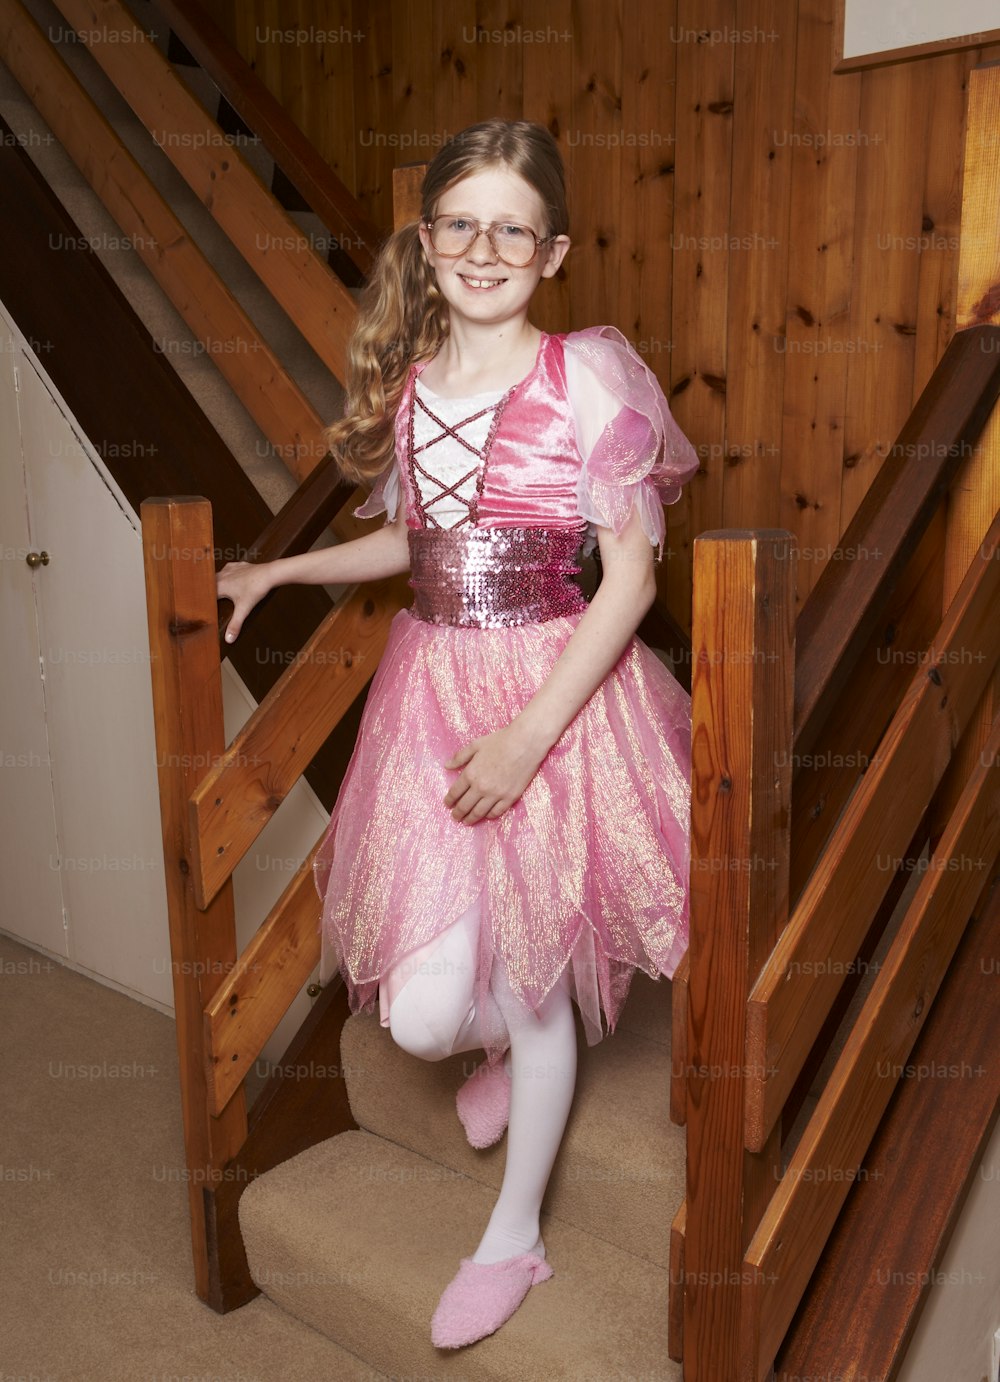 Une petite fille en robe rose debout sur des escaliers